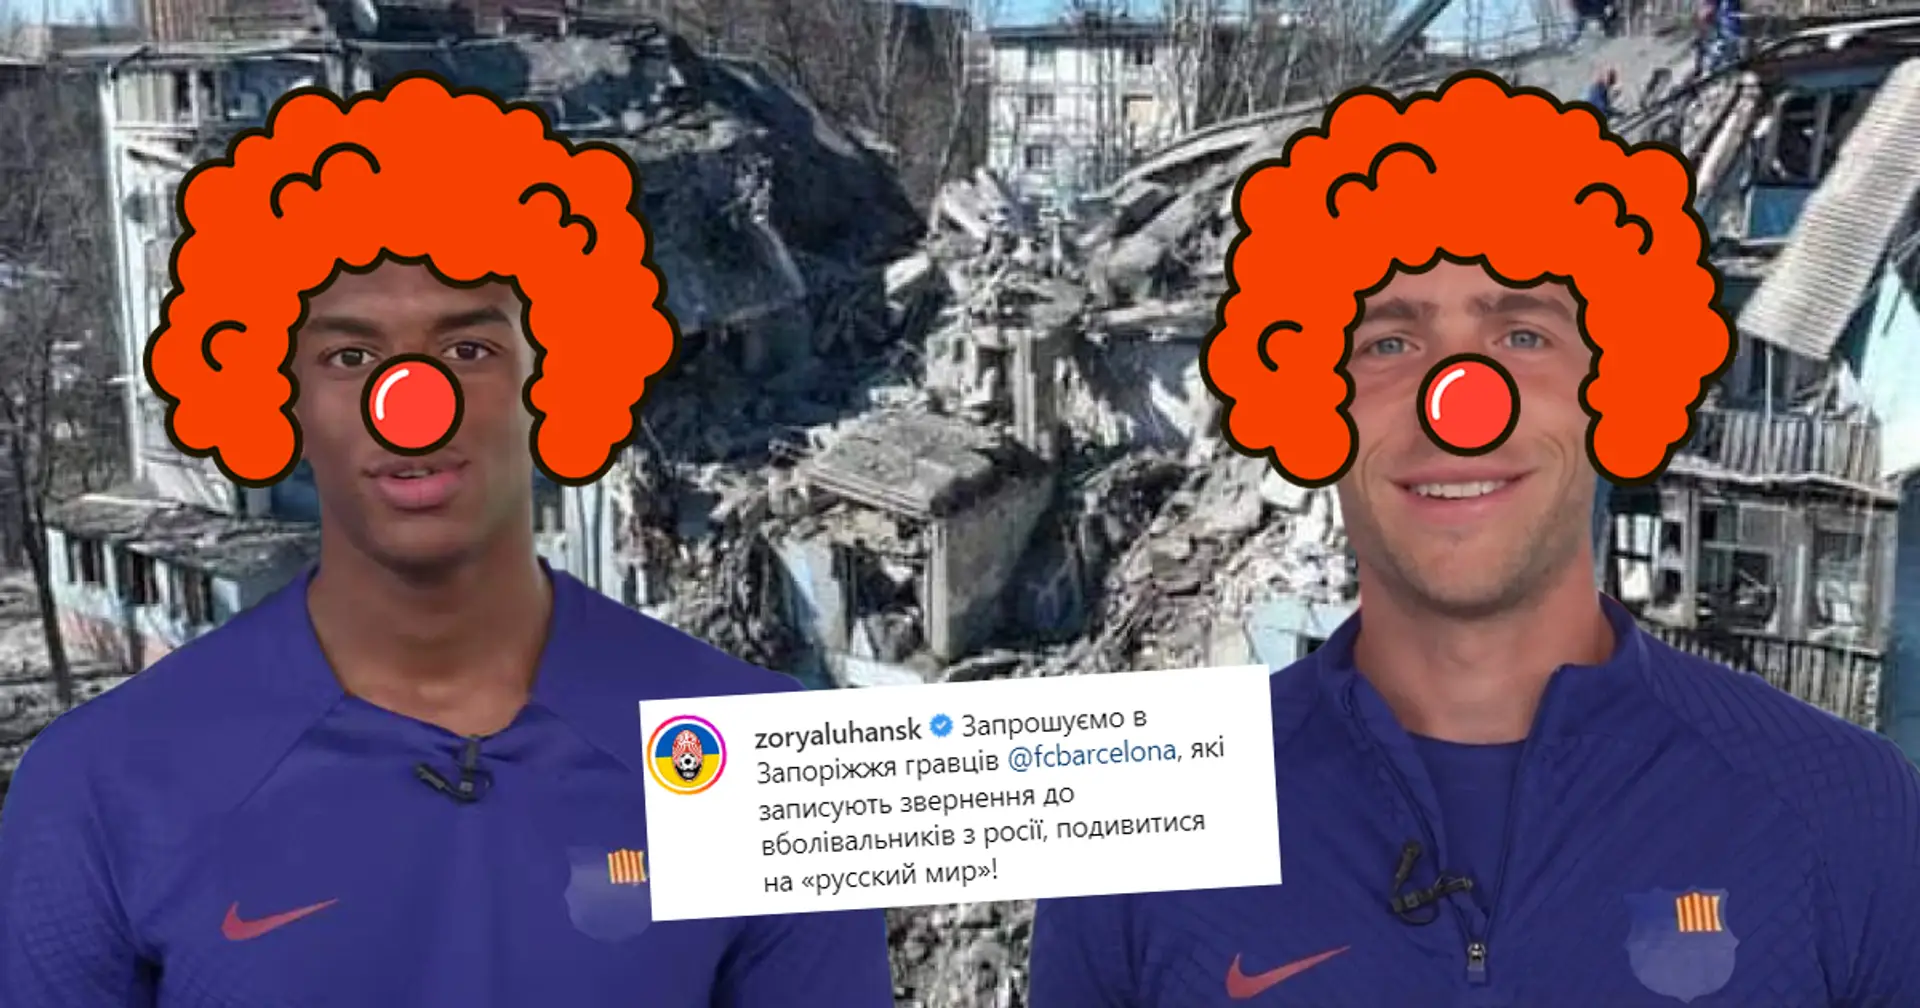 "Wir laden die Spieler des FC Barcelona nach Saporischschja ein" - Zorya Luhansk